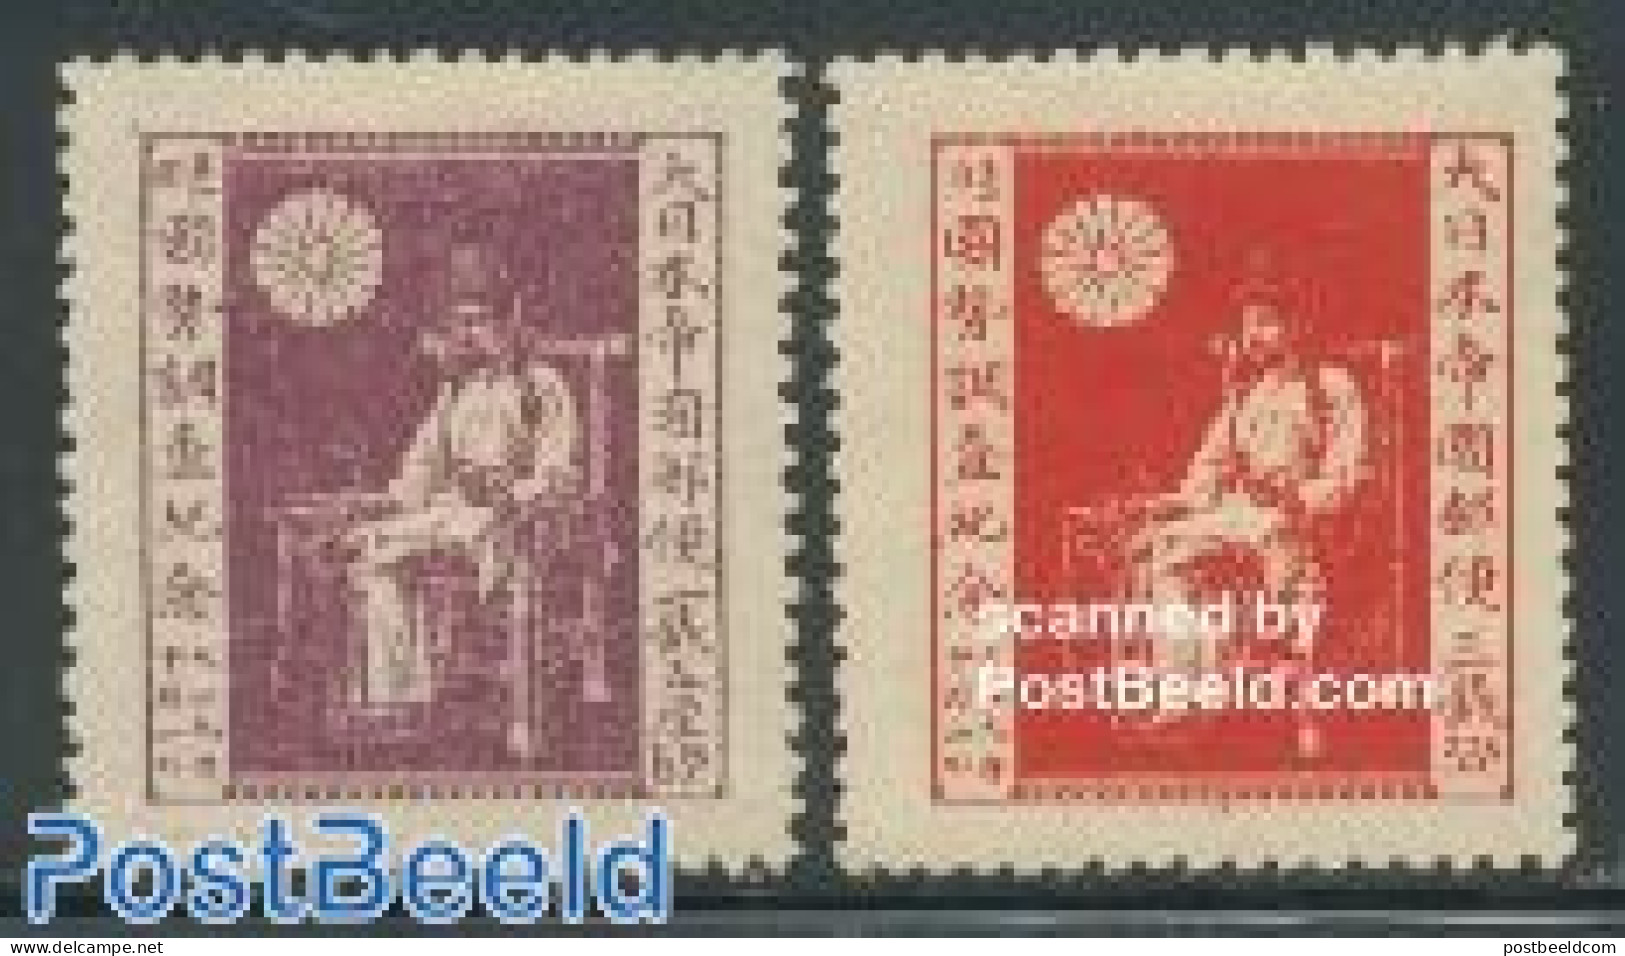 Japan 1920 Jimmu Empire 2v, Census, Unused (hinged), Science - Statistics - Unused Stamps